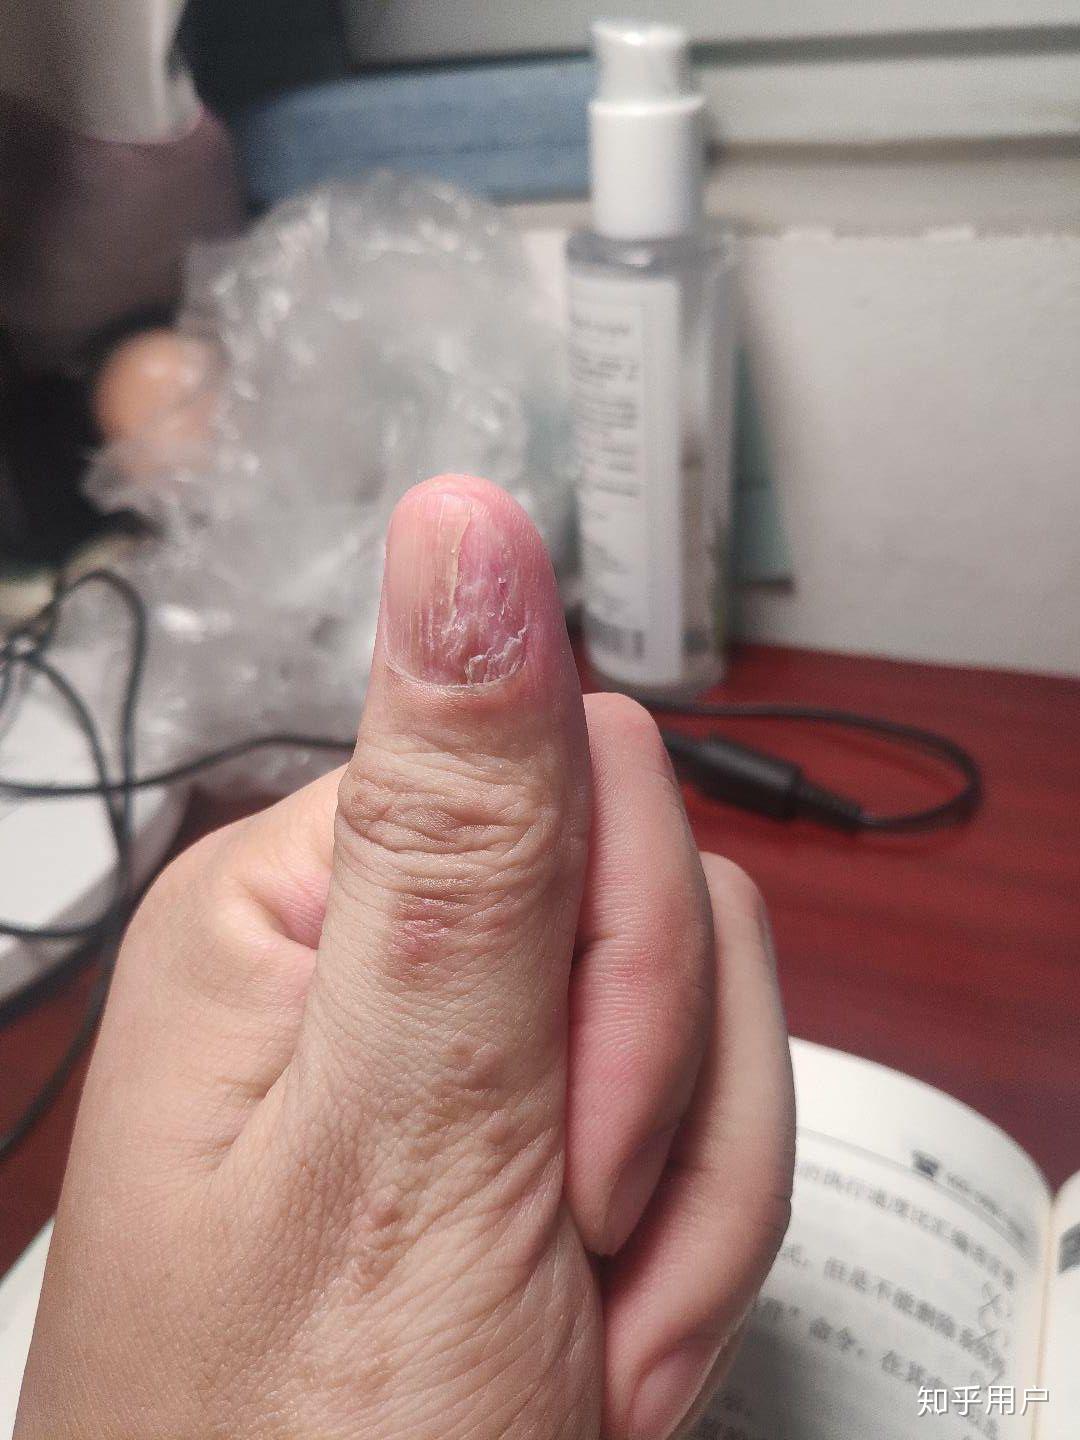 手指甲裂开了要怎么修复,治疗呢? 